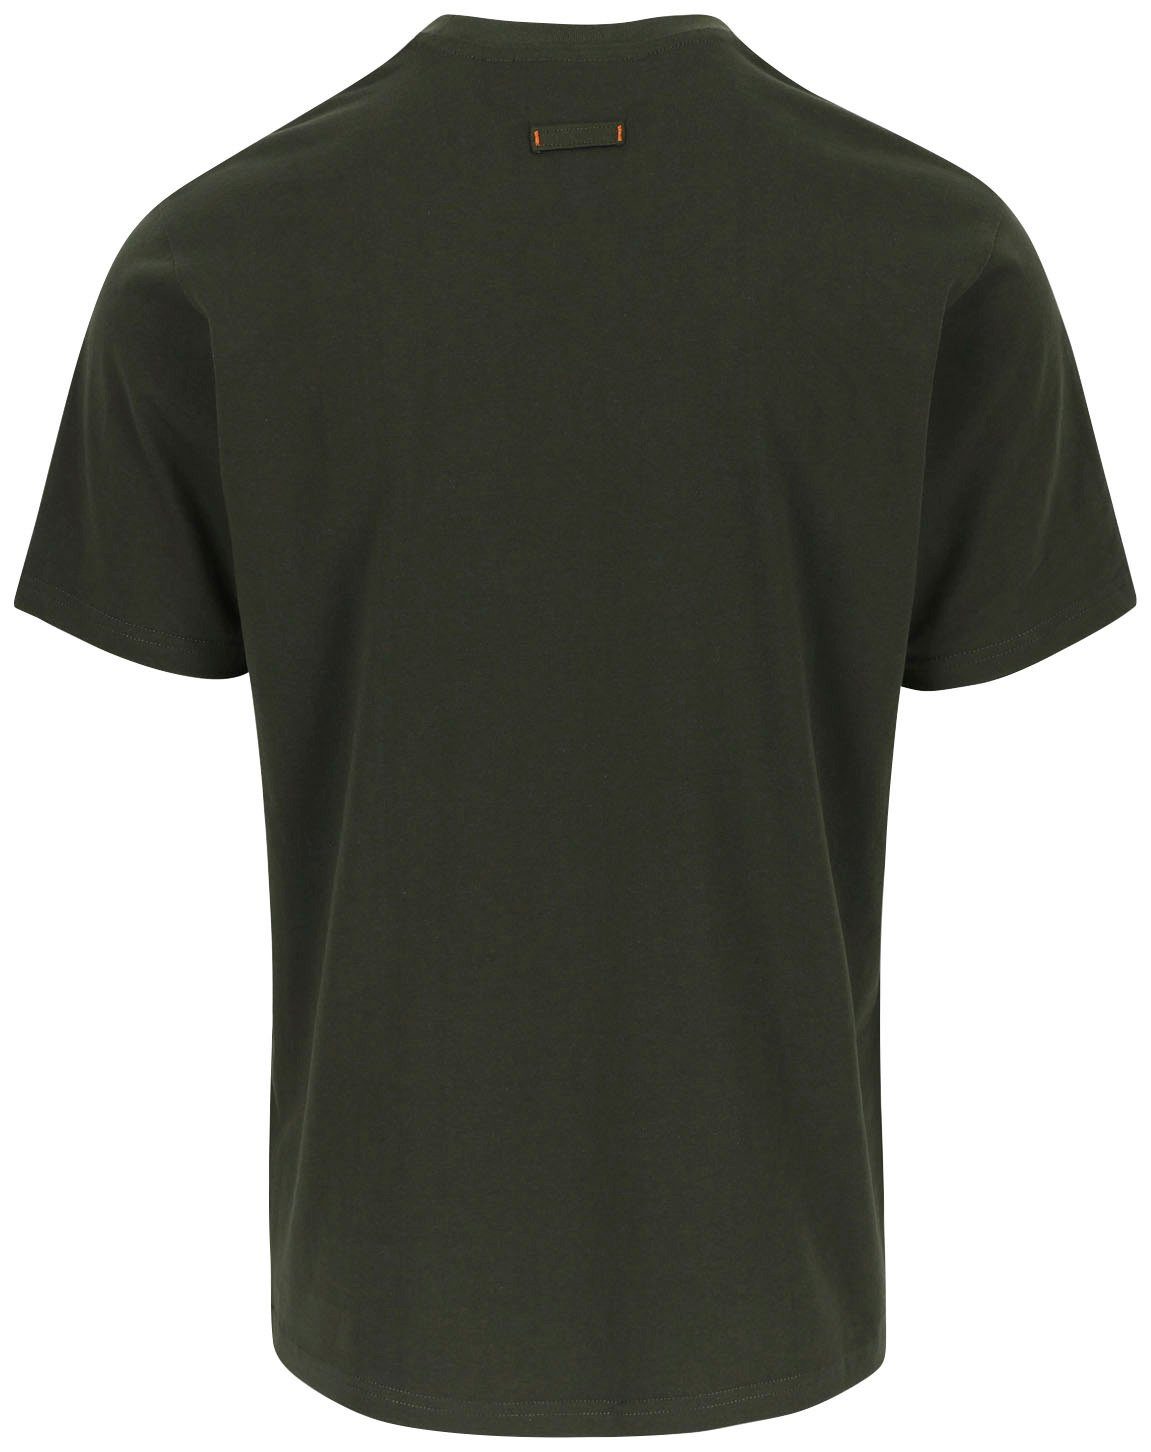 Rundhals, mit Baumwolle, ENI Herock Tragegefühl T-Shirt khaki angenehmes Herock®-Aufdruck,